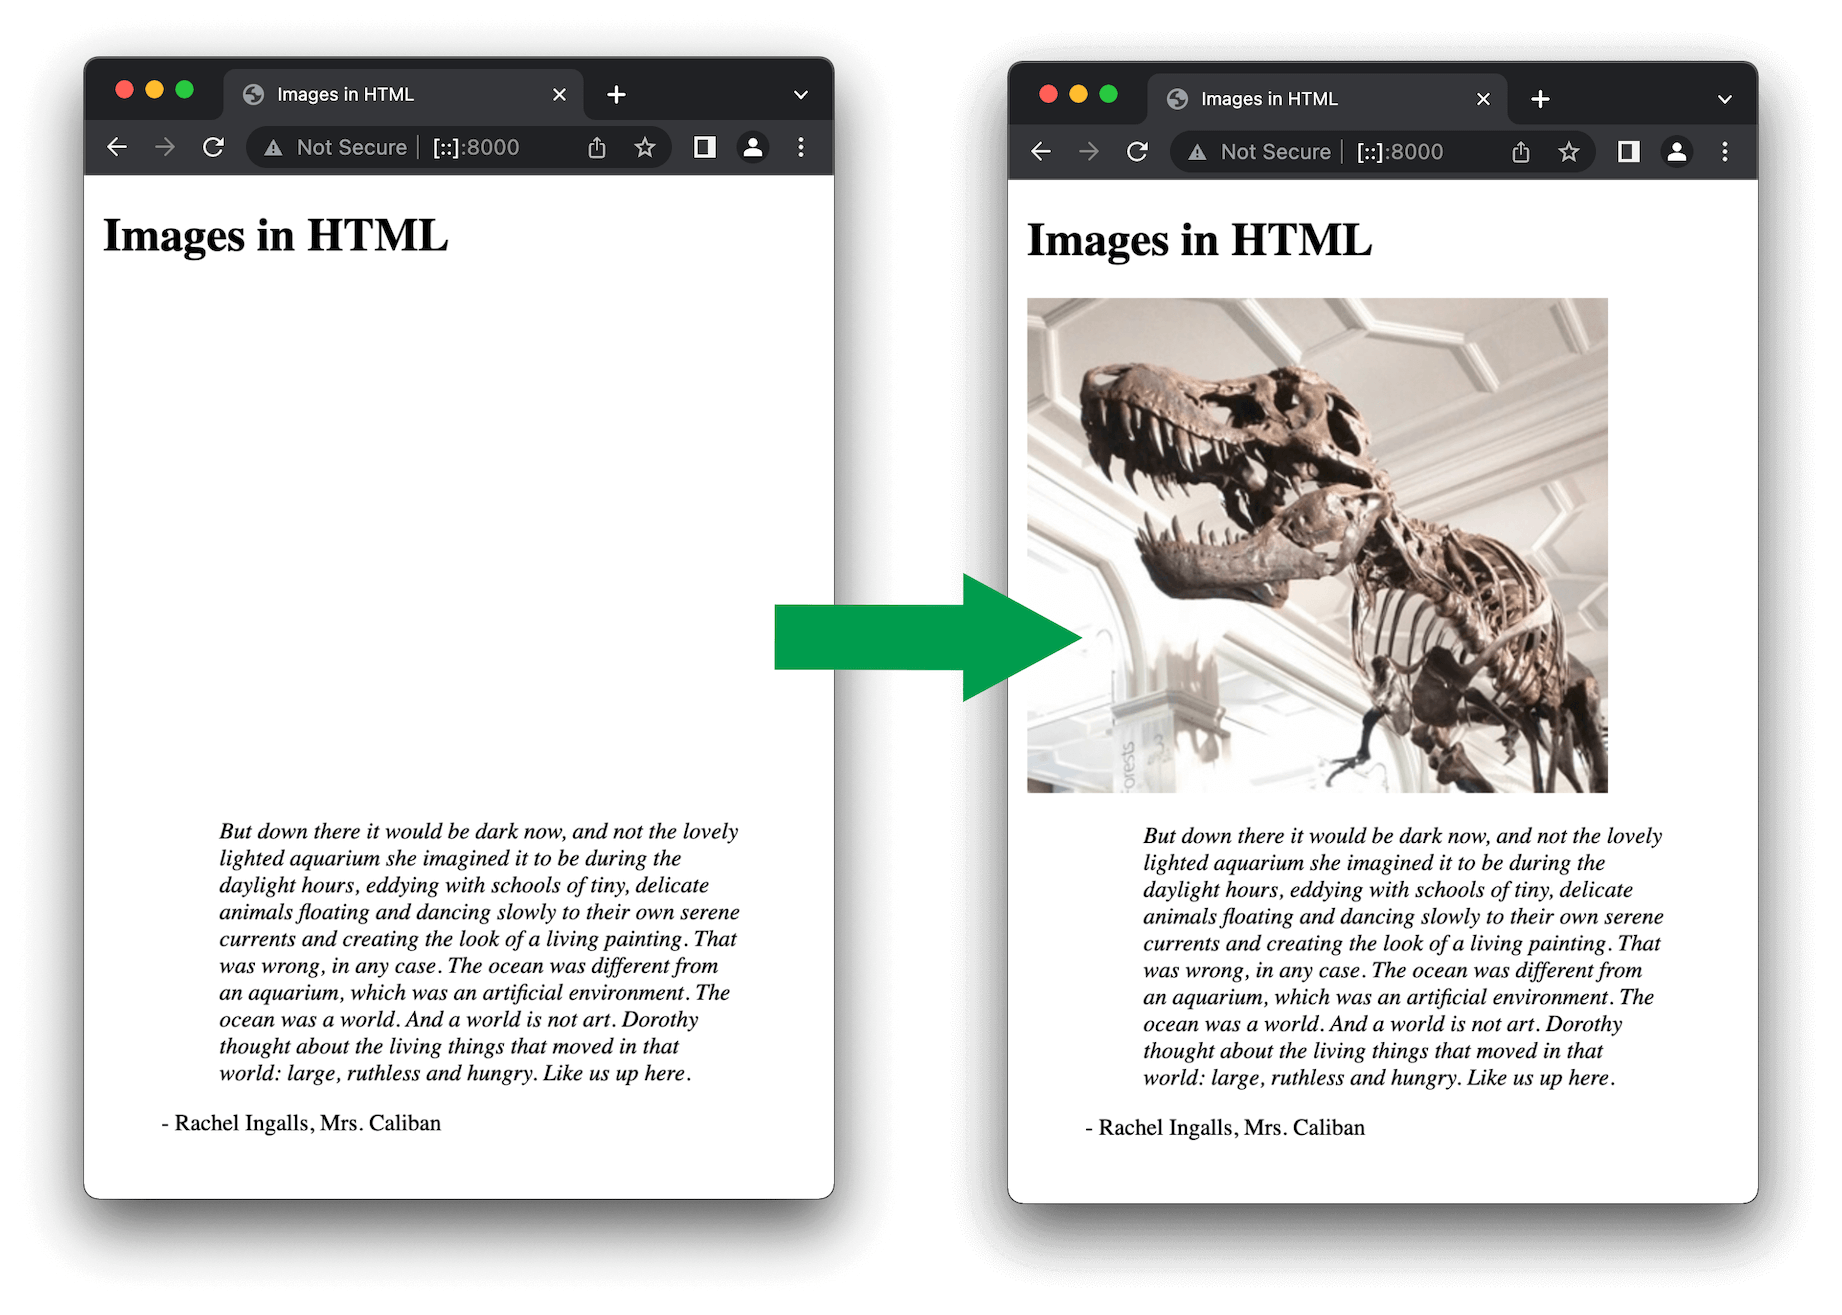 画像サイズを指定した場合の、ブラウザーがページを読み込んでいるときと完了したときのページレイアウトの比較。